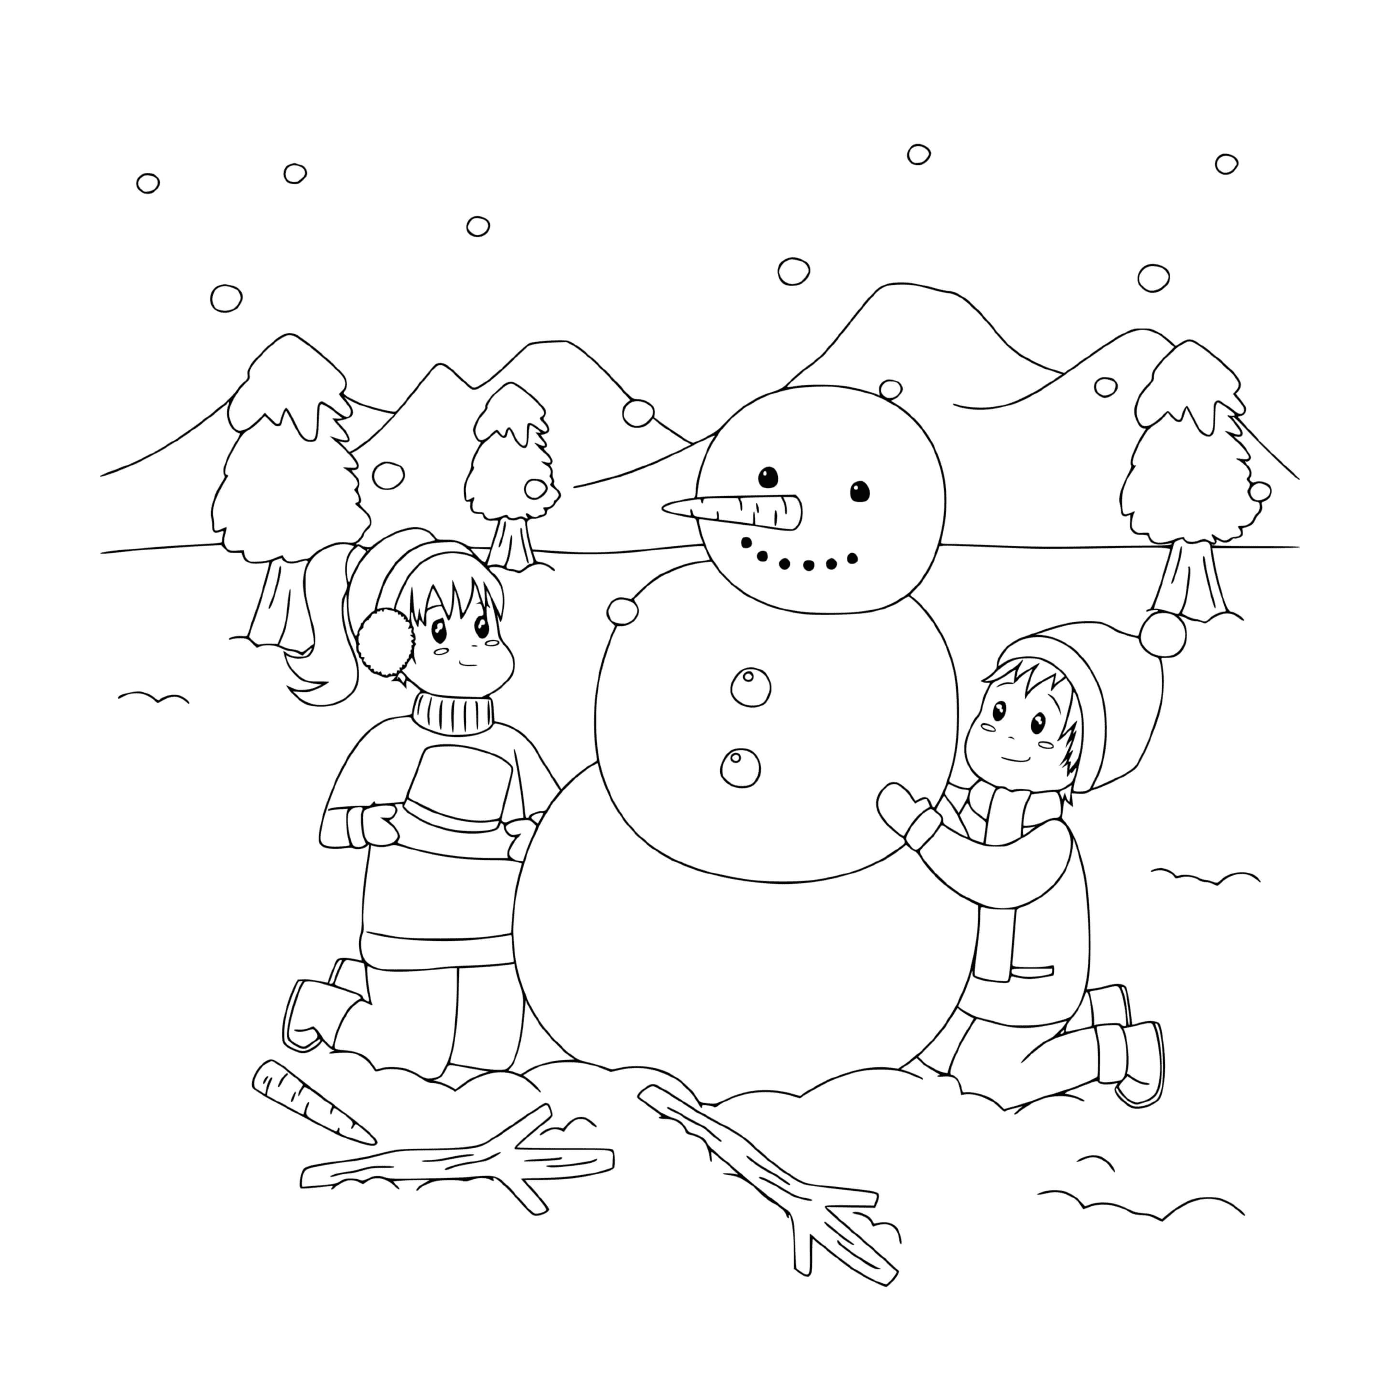  Crianças construindo um boneco de neve em uma paisagem nevada 